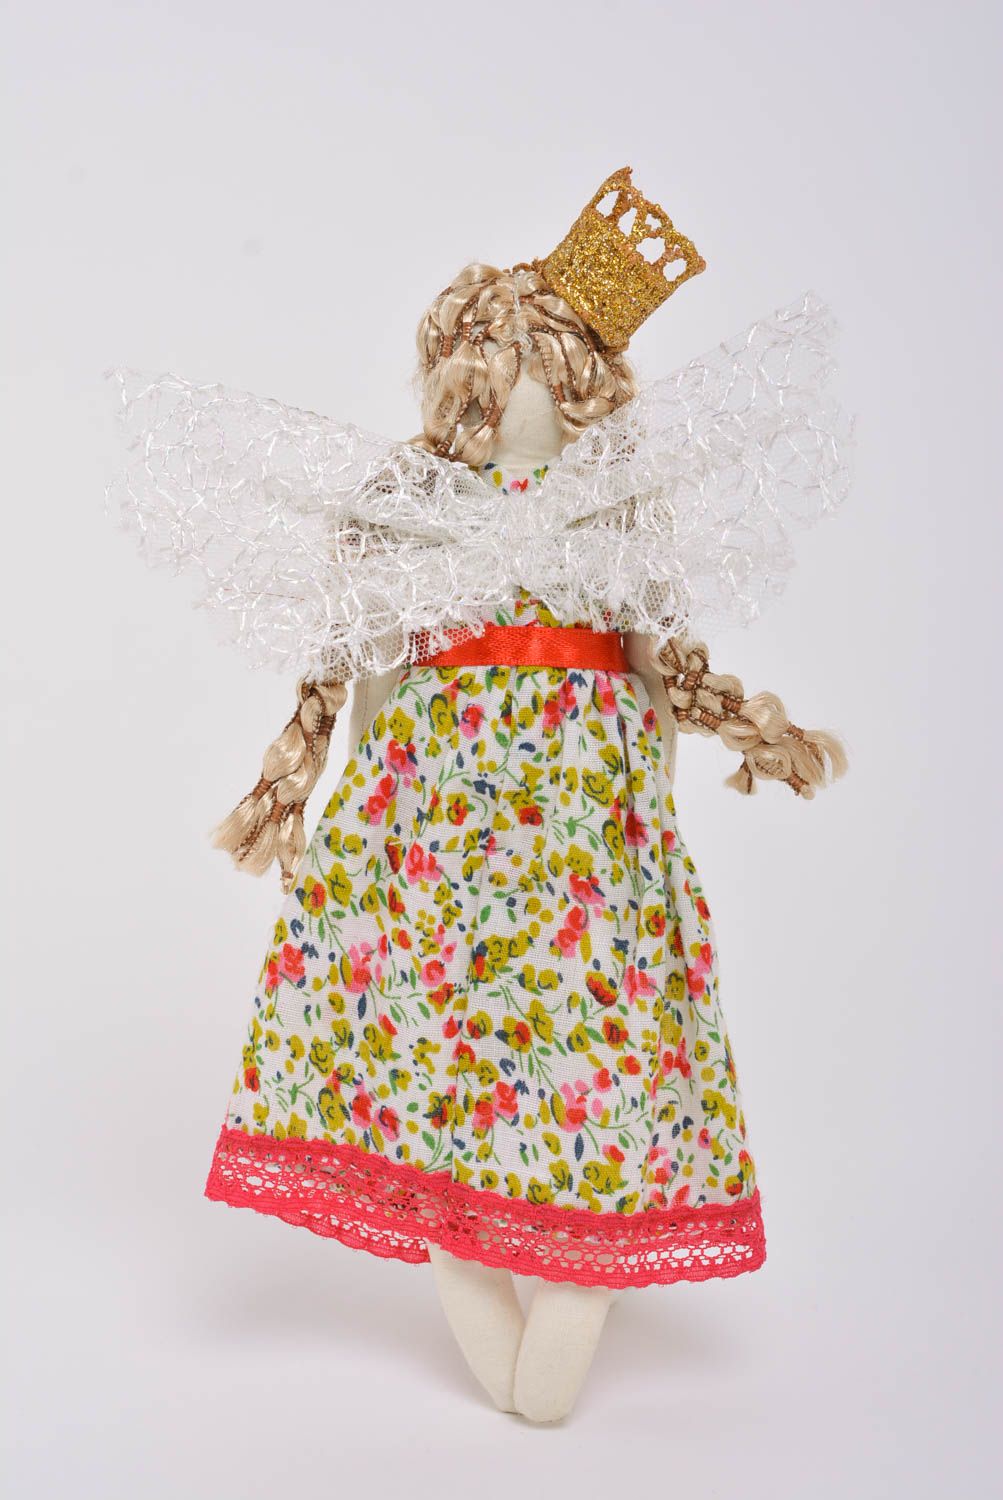 Мягкая игрушка королева из тканей ручной работы красивая авторская для дома фото 3